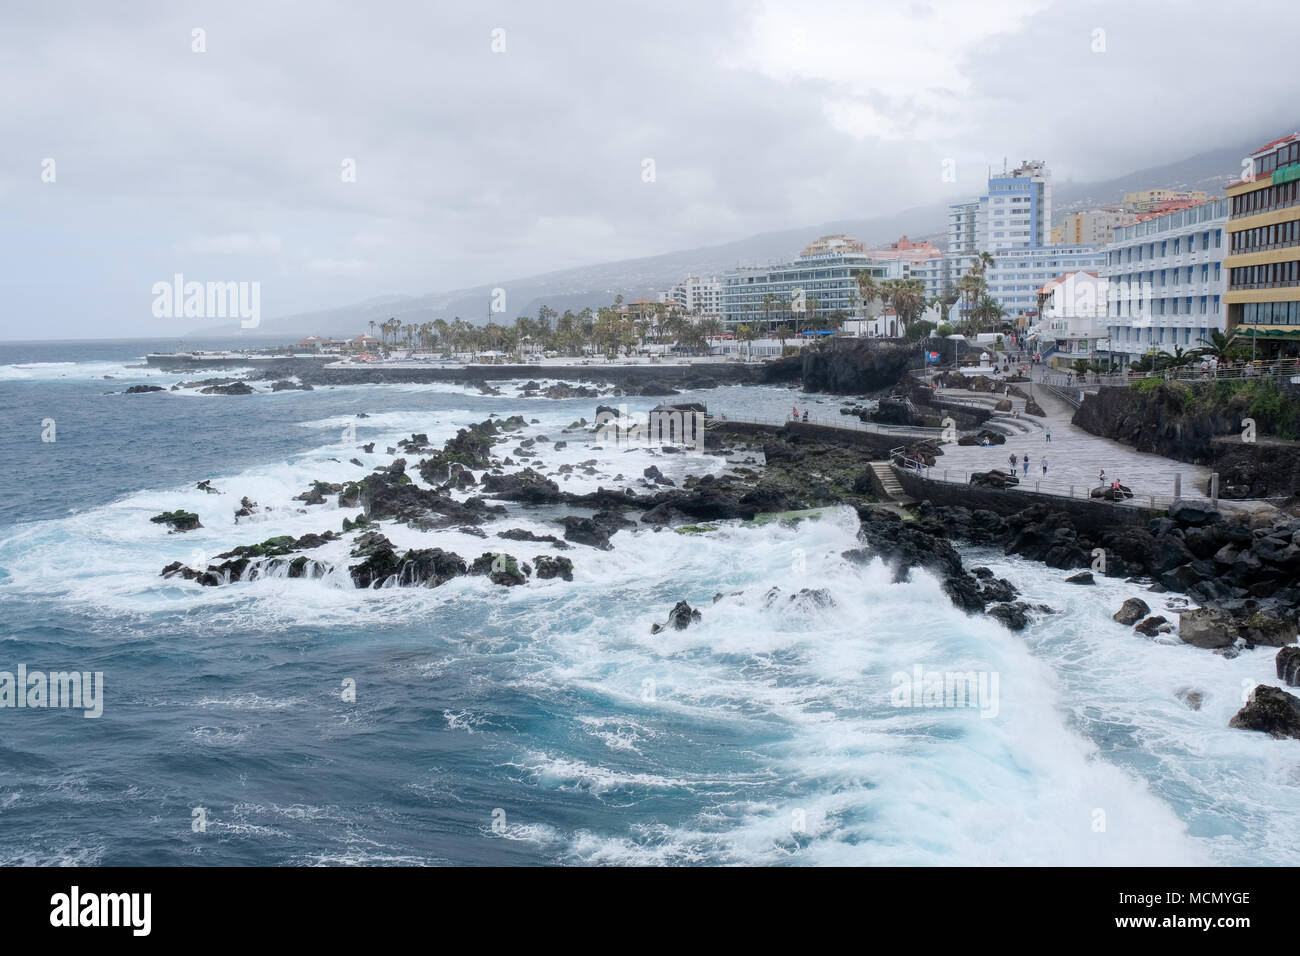 Puerto de la Cruz, Teneriffa, Kanarische Inseln; raue See auf der gepflegten Strandpromenade, als der Wind von einem herannahenden Sturm holt. Stockfoto